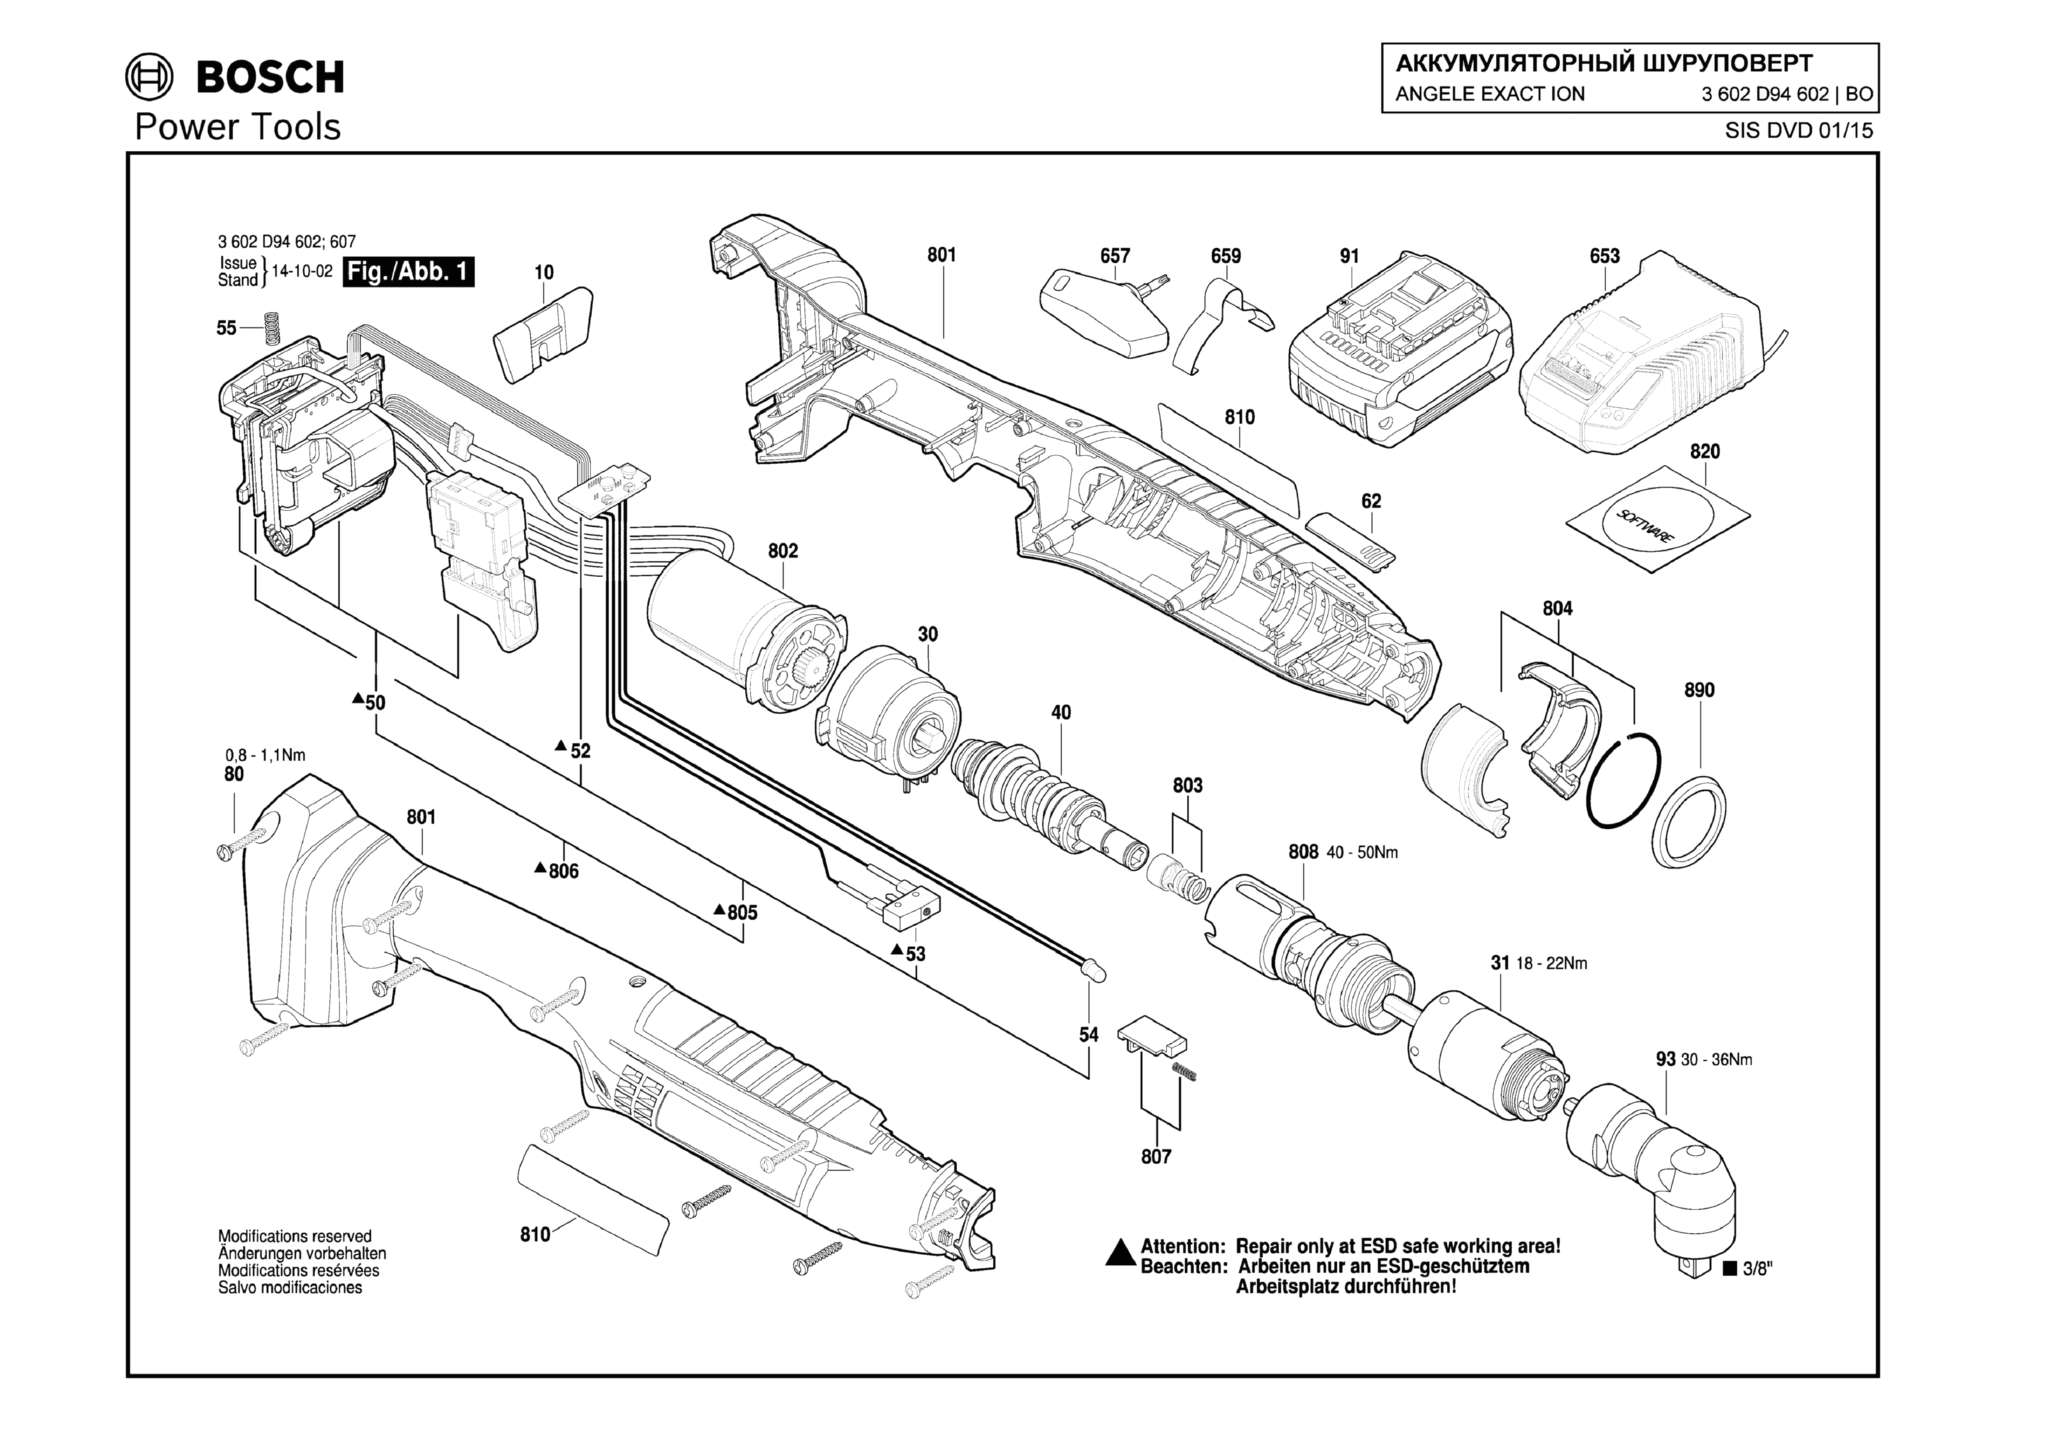 Запчасти, схема и деталировка Bosch ANGELE EXACT ION 23-380 (ТИП 3602D94602)